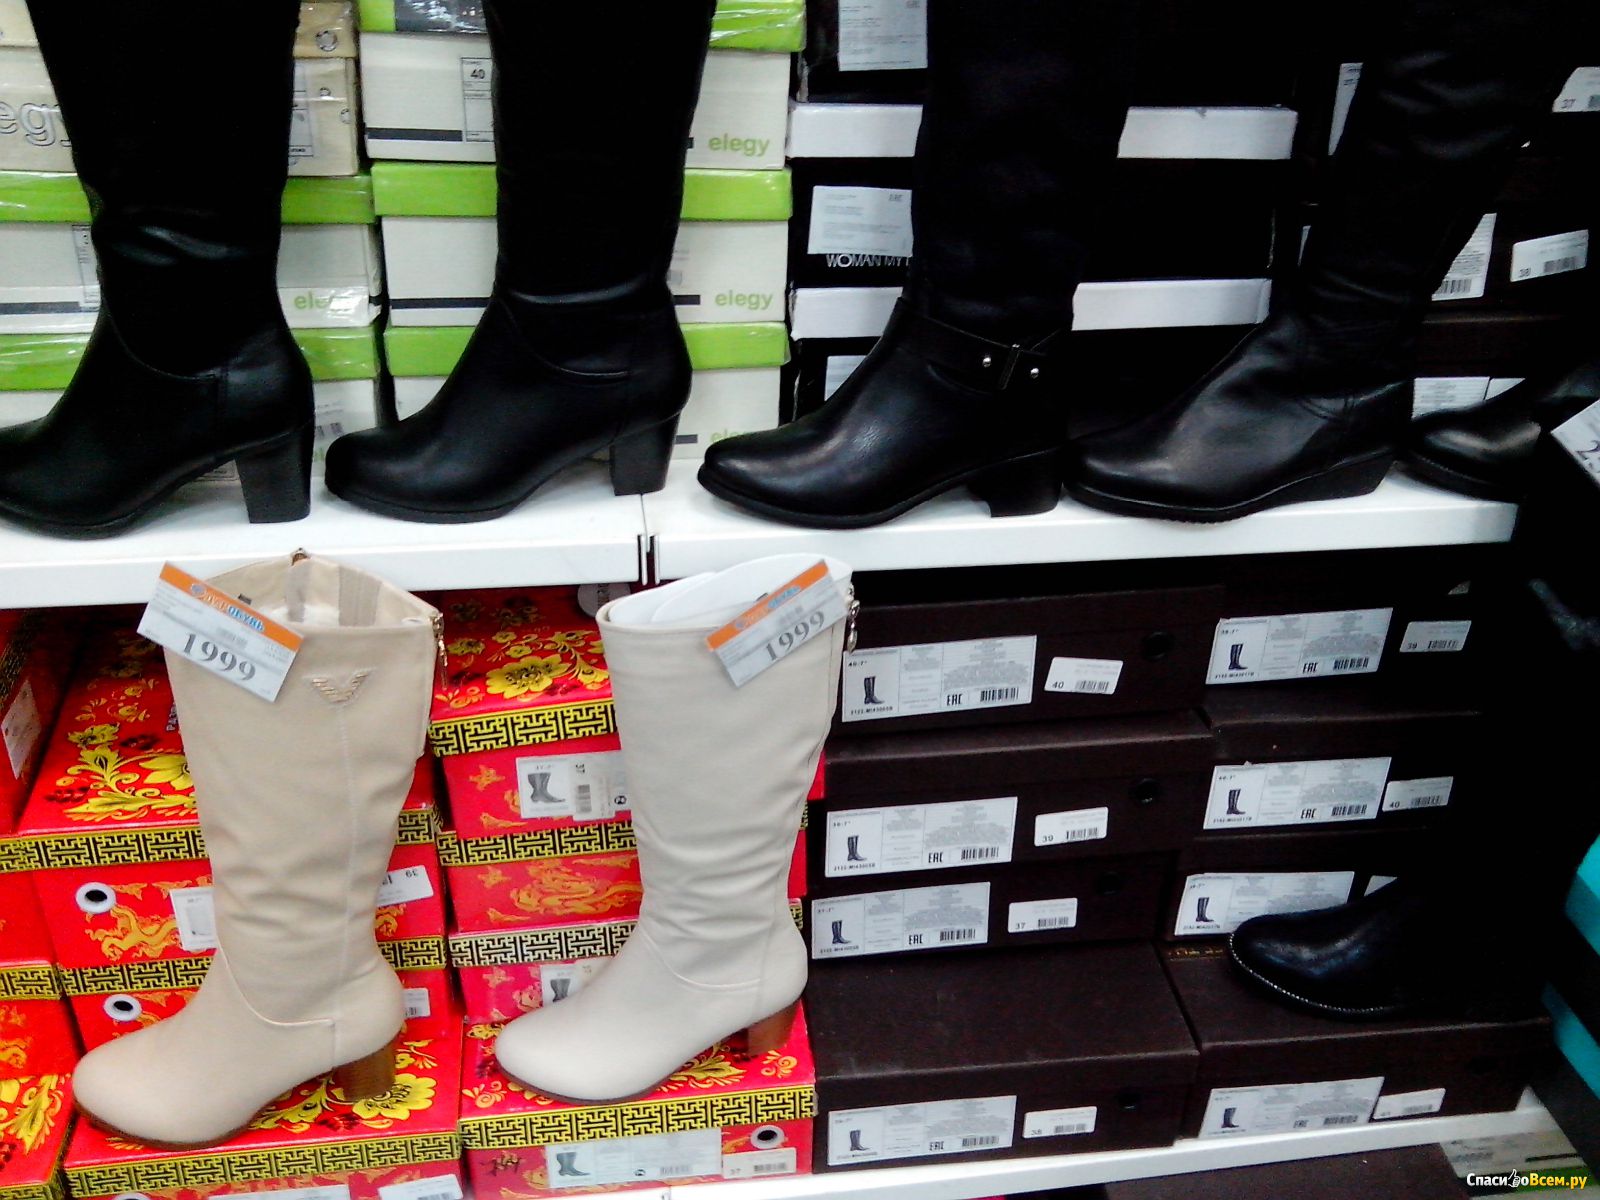 Шагал сапог. Магазин обуви белорусская обувь. Юничел ботфорты. Ассортимент обуви белорусской в магазинах обуви. Обувь великан женская.